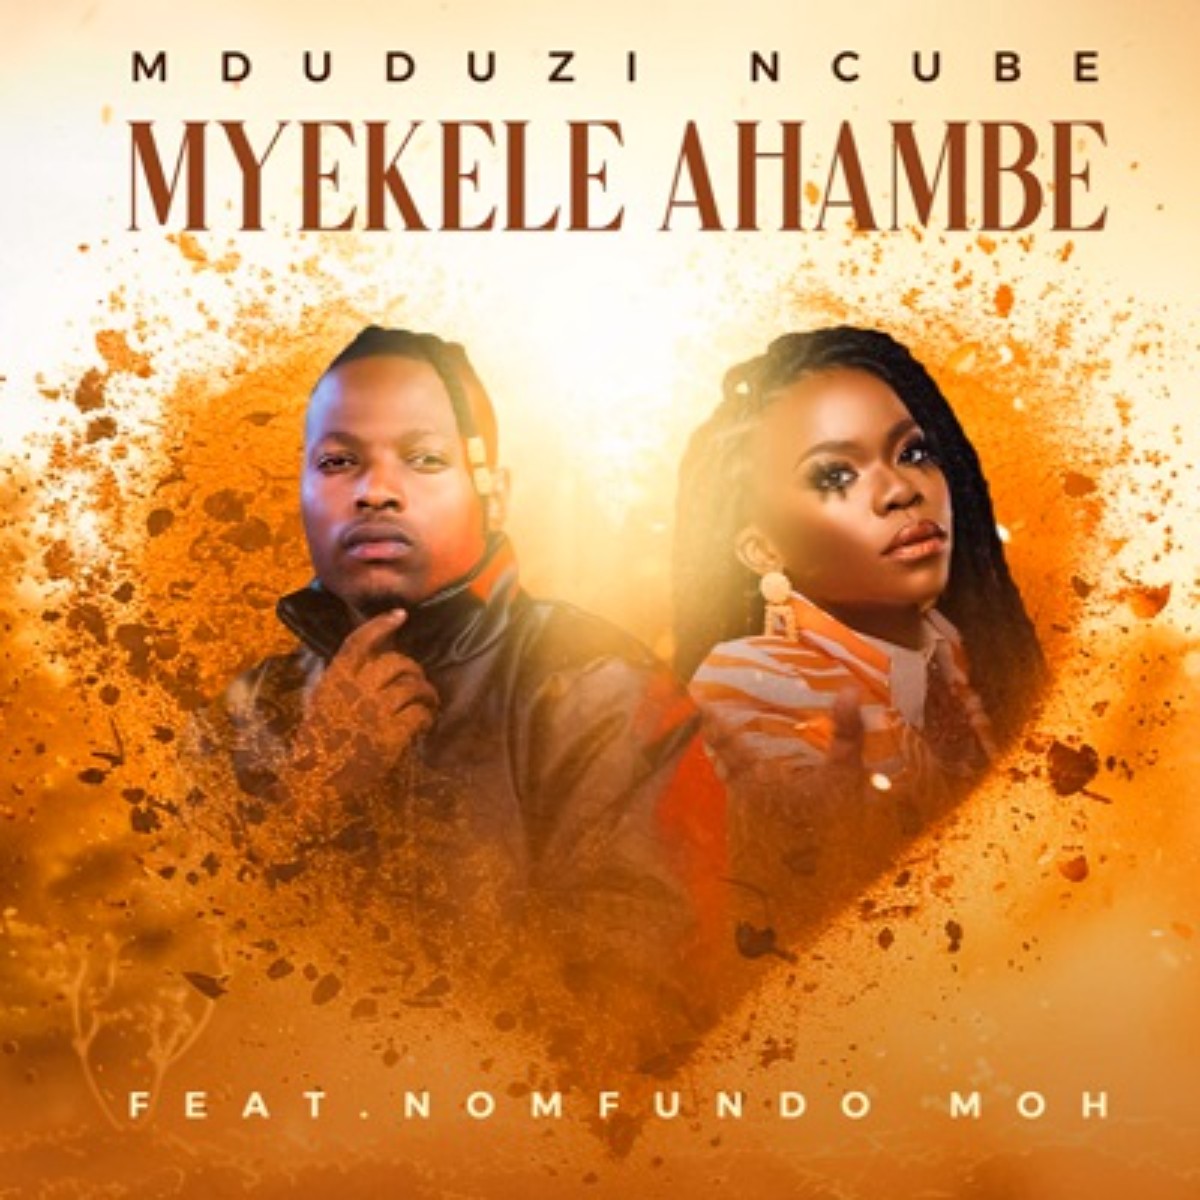 Download Mduduzi Ncube Myekele Ahambe Ft. Nomfundo Moh Mp3 Hiphopza